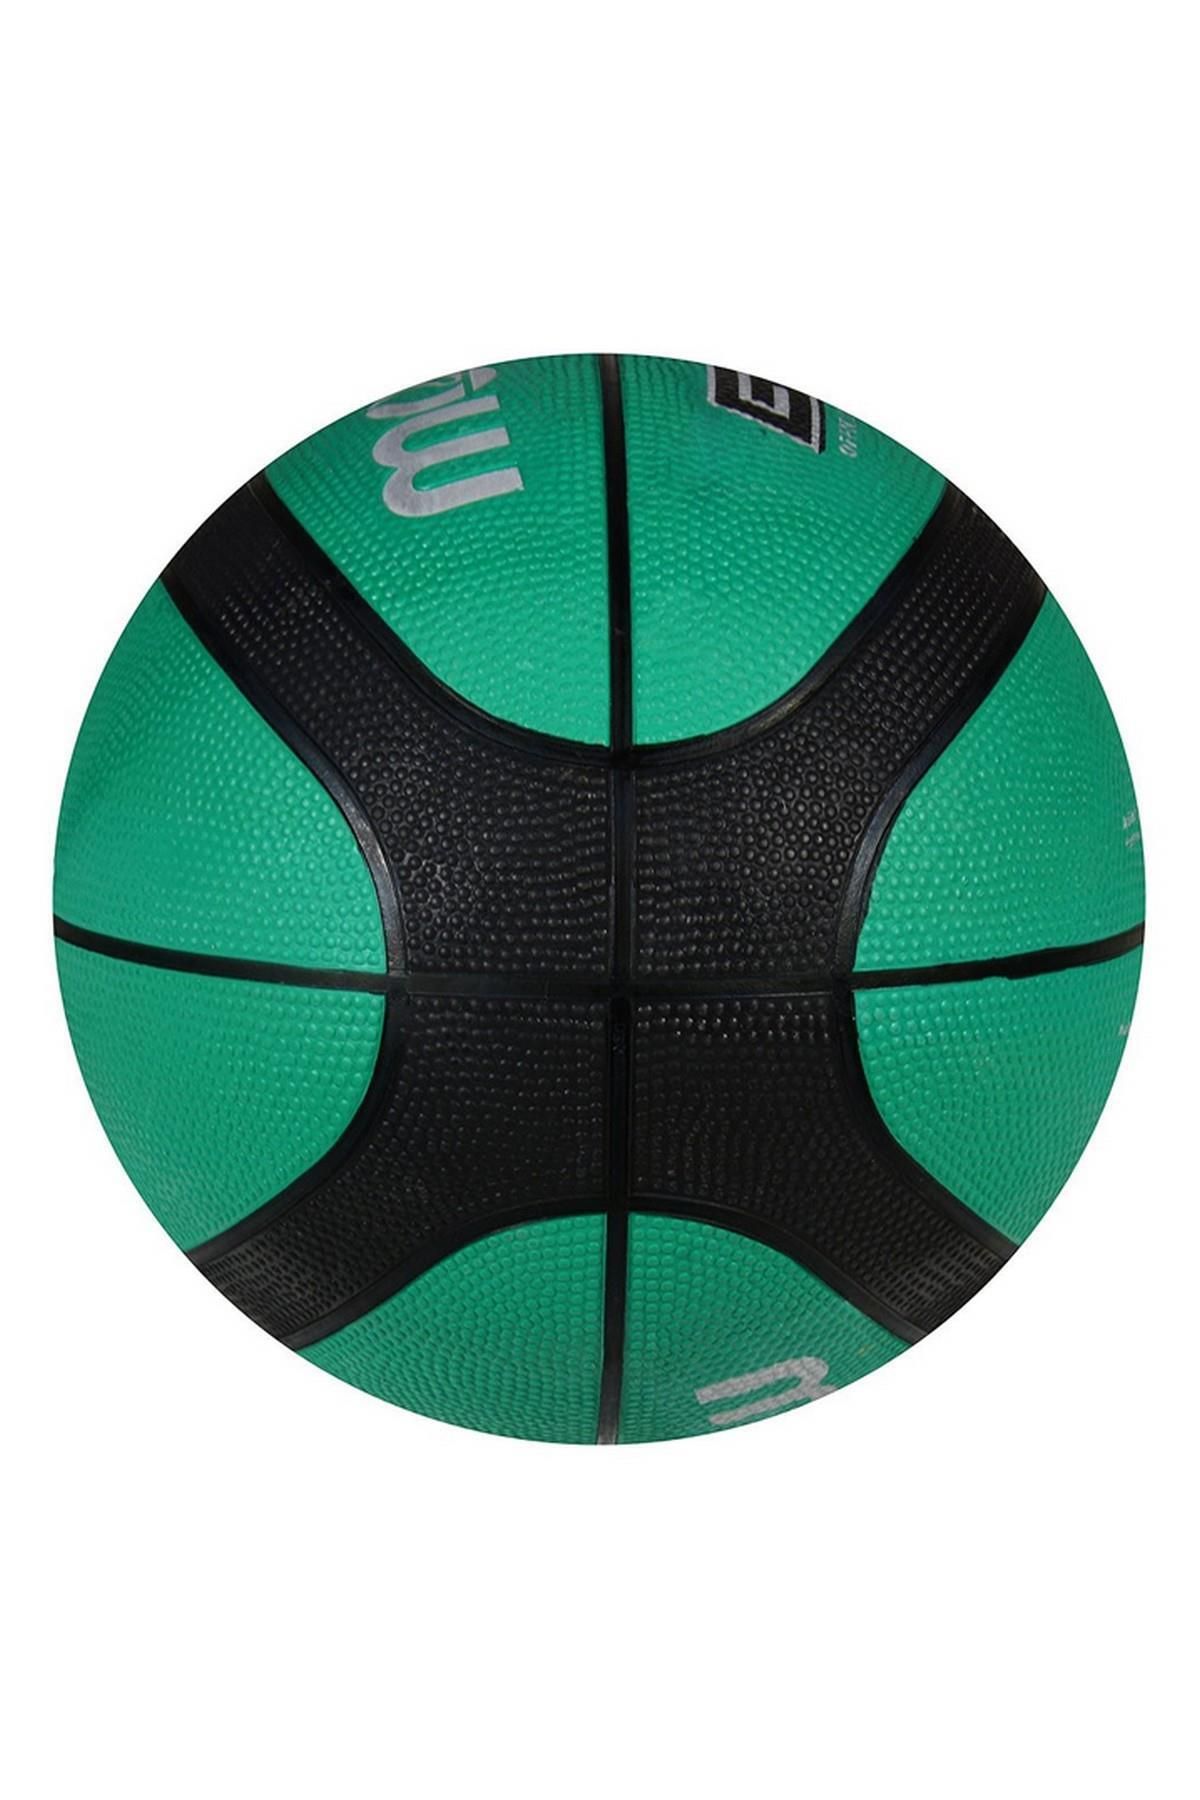 Molten Basketbol Topu Bgr7 Fiba Onaylı 7 No Kauçuk